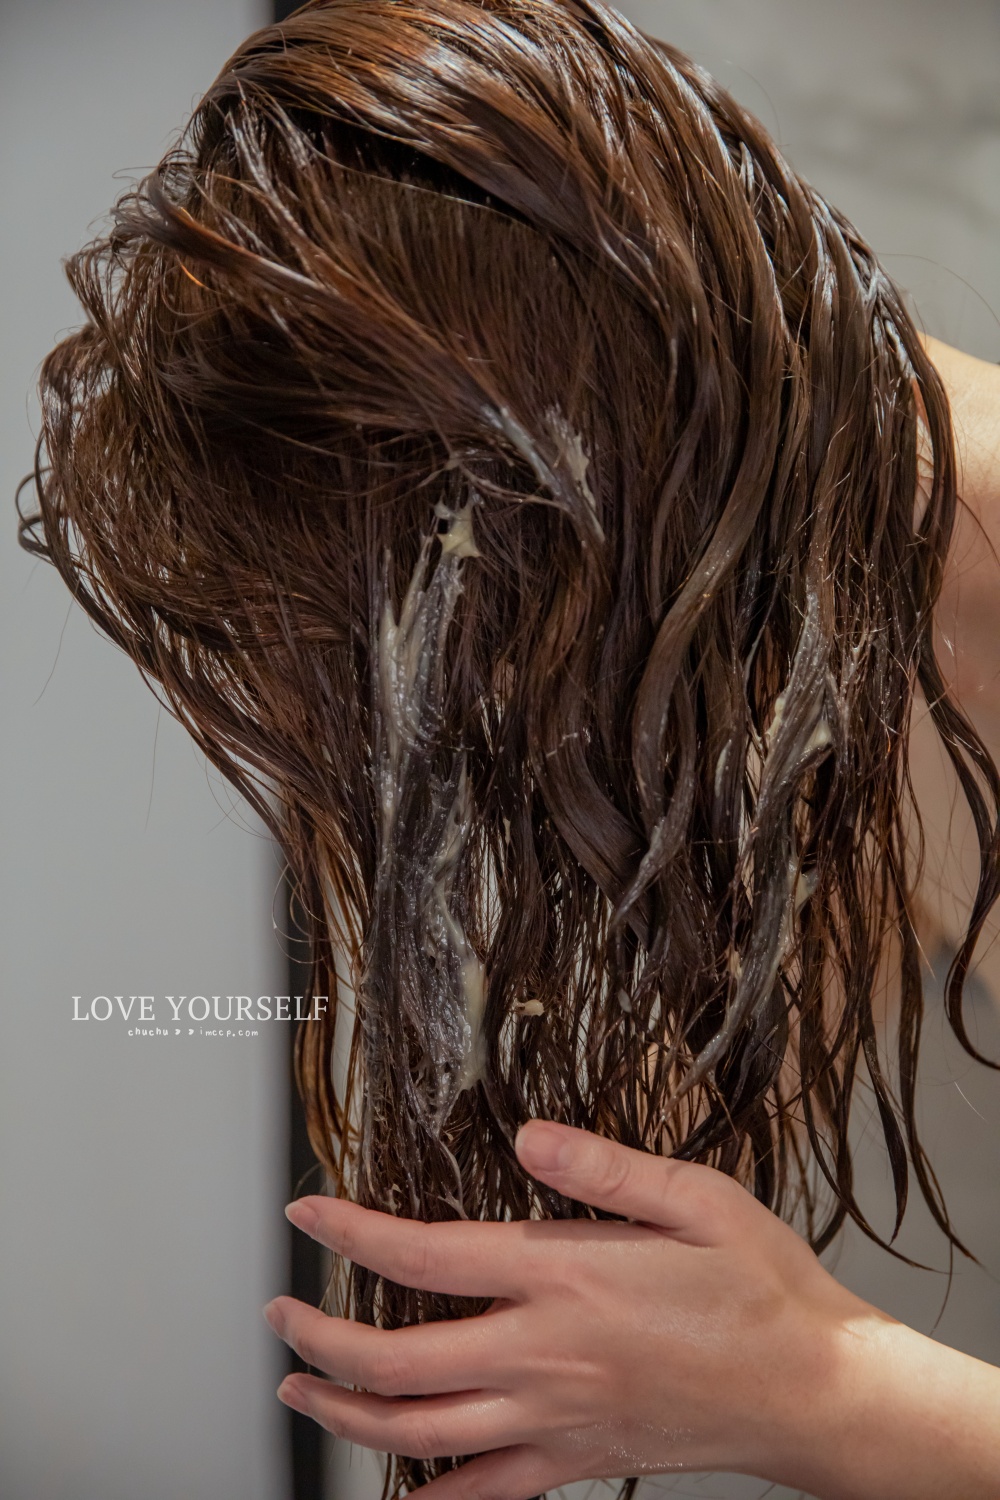 愛自己Love Yourself 天然洗沐系列。愛地球的環保天然洗髮精/沐浴乳推薦